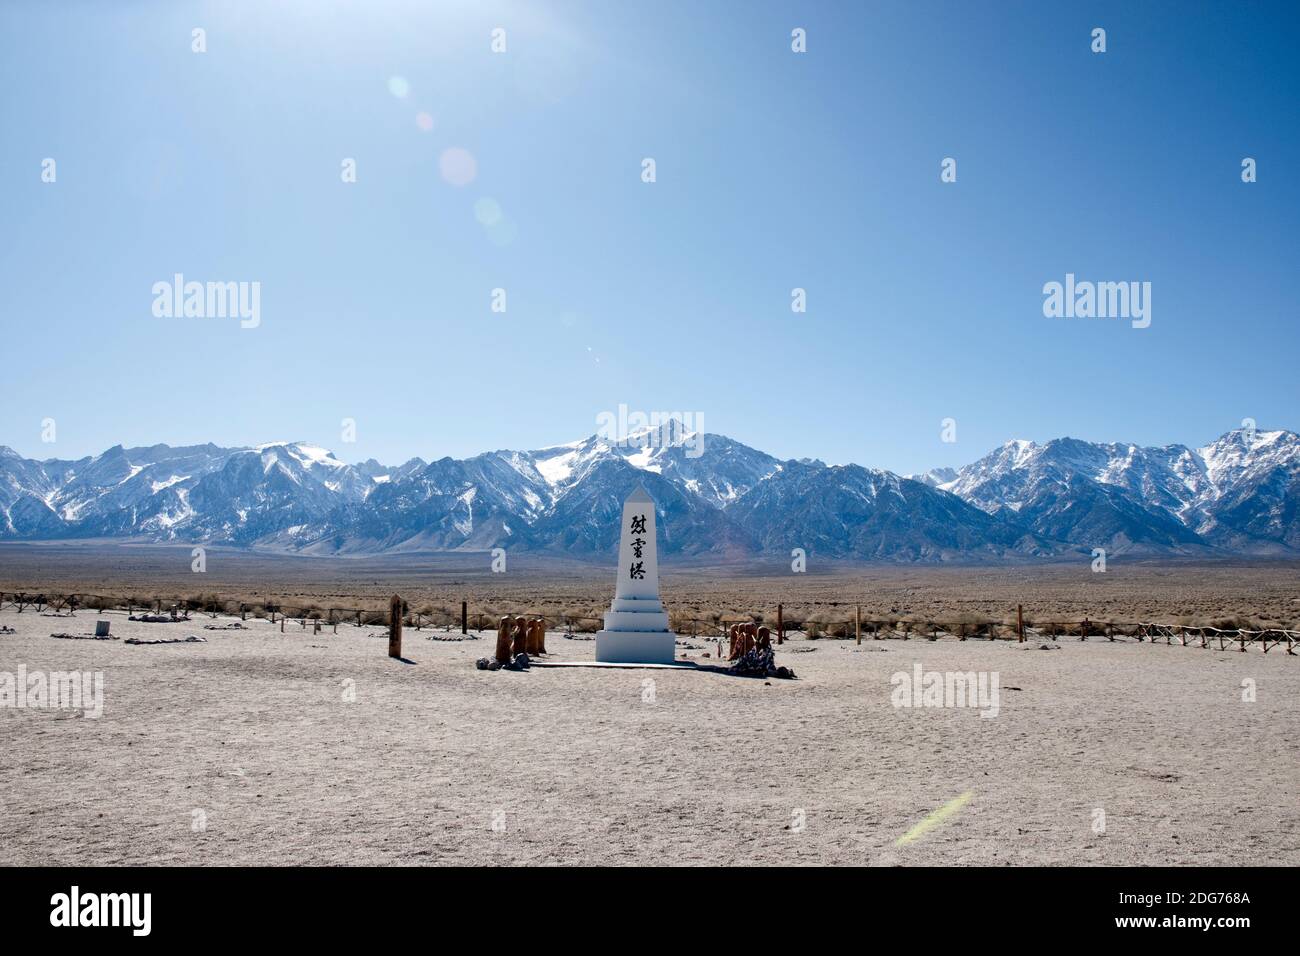 Cimetière Monument à Manzanar NAT. Site historique, un camp d'internement où les Américains japonais ont été emprisonnés pendant la Seconde Guerre mondiale, Californie, Etats-Unis. Banque D'Images